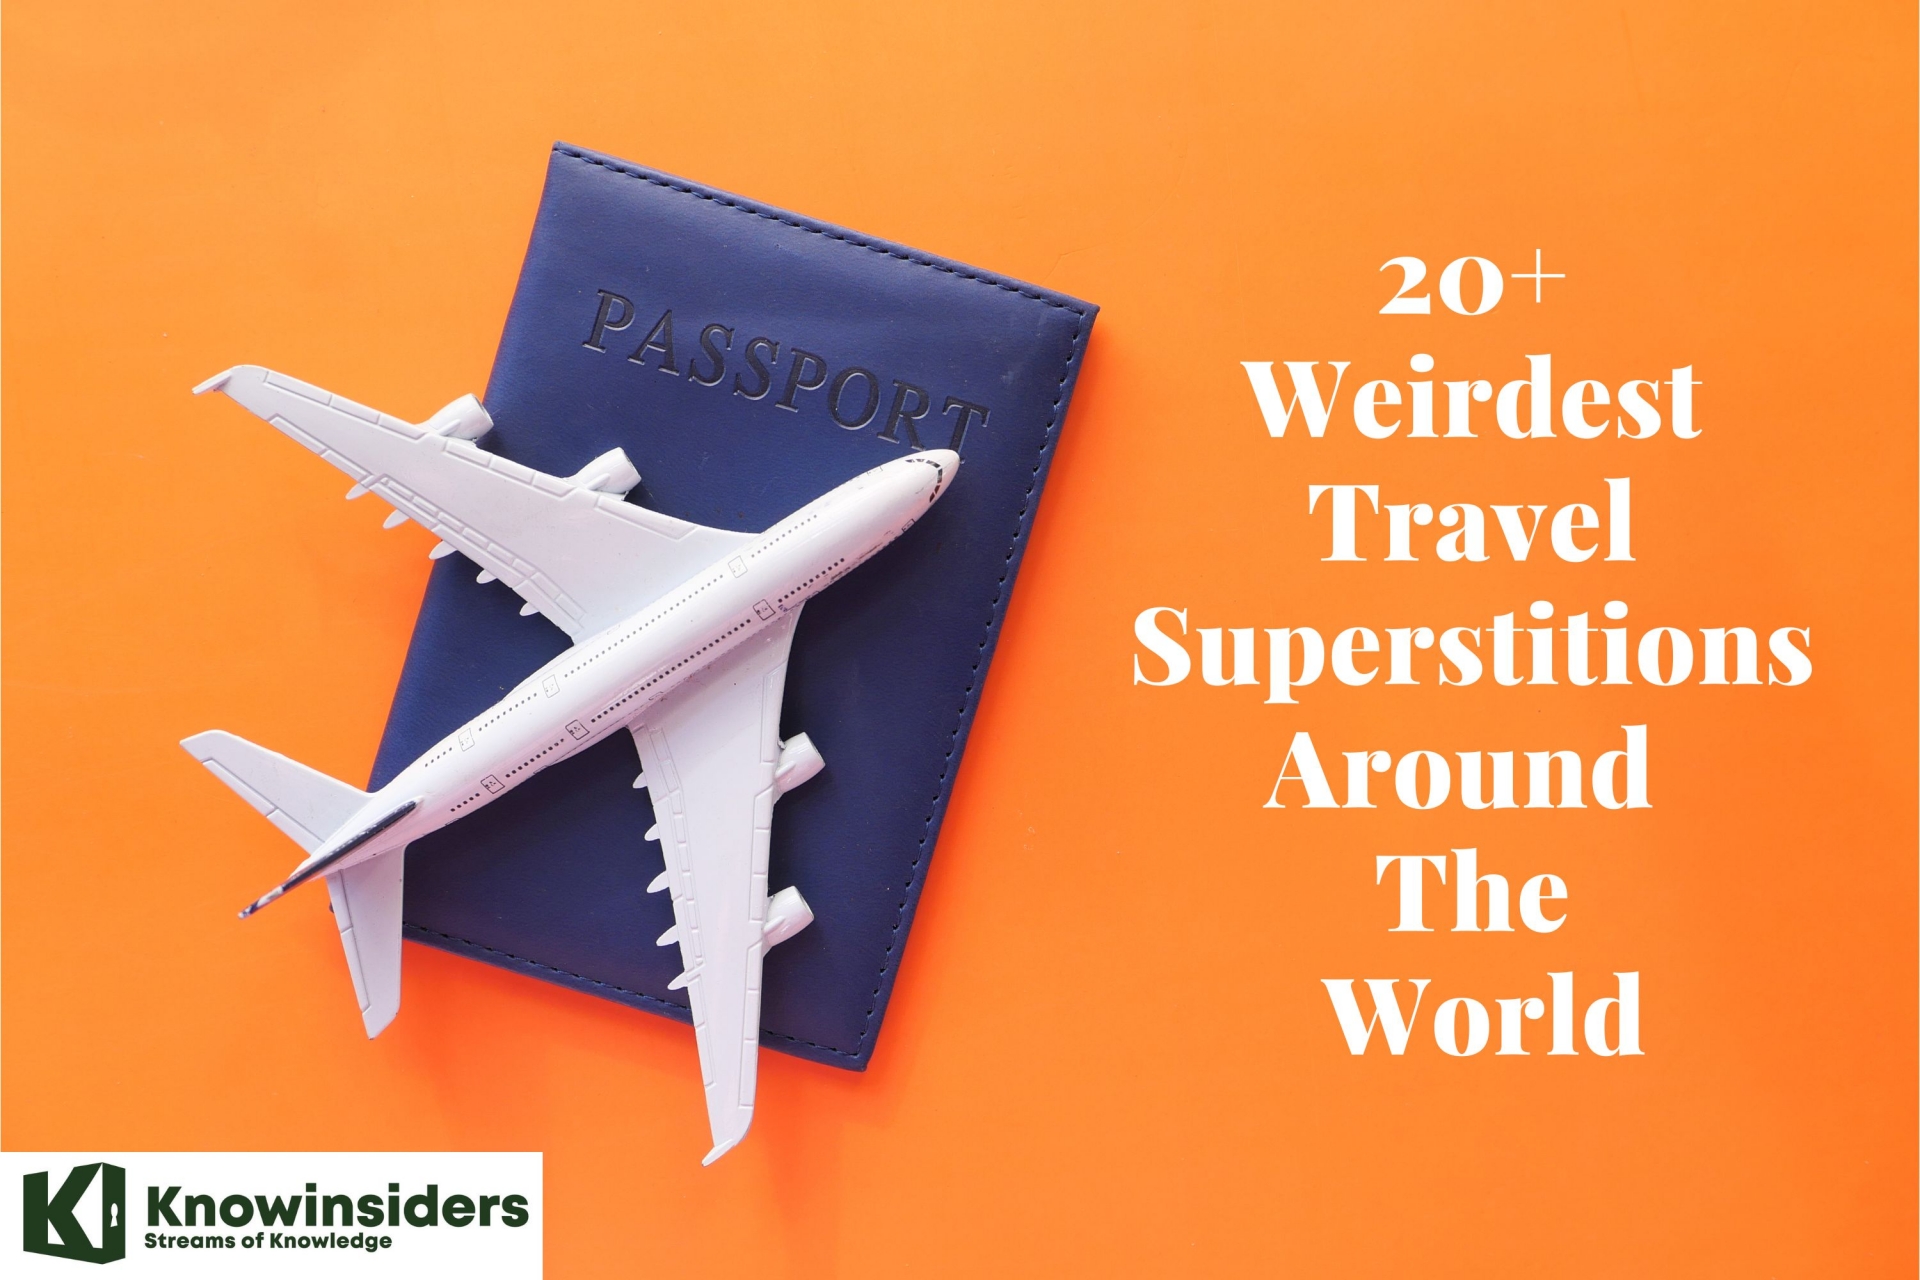 20+ Weirdest Travel Superstitions Around The World